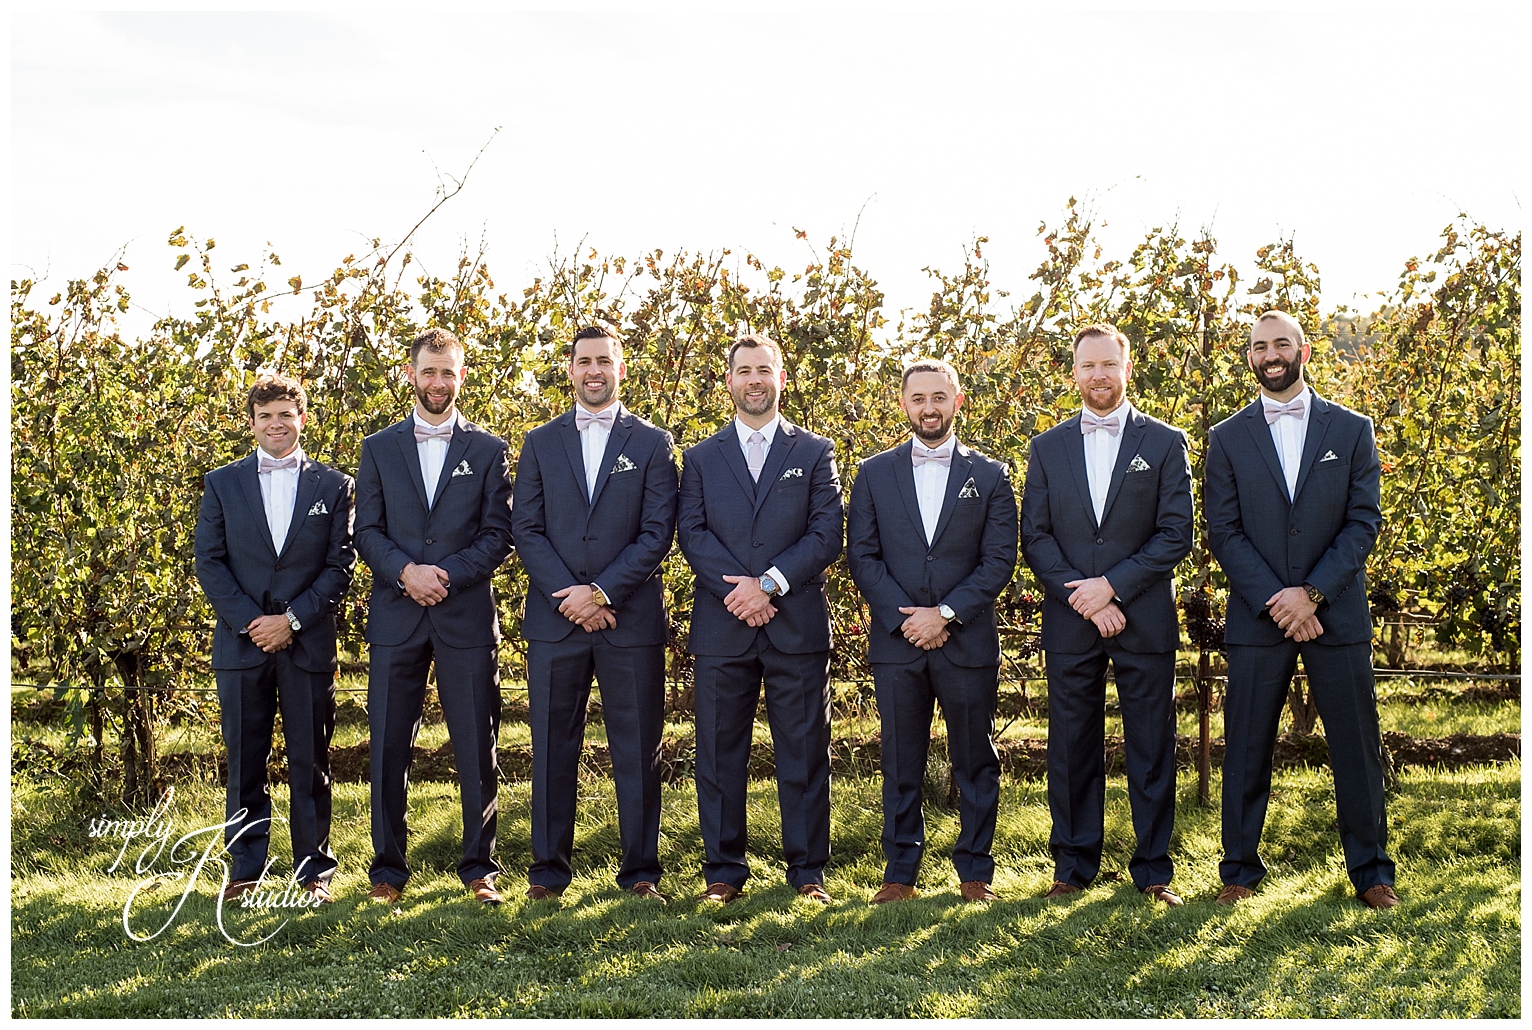 55 Groomsmen at a Vineyard Wedding CT.jpg